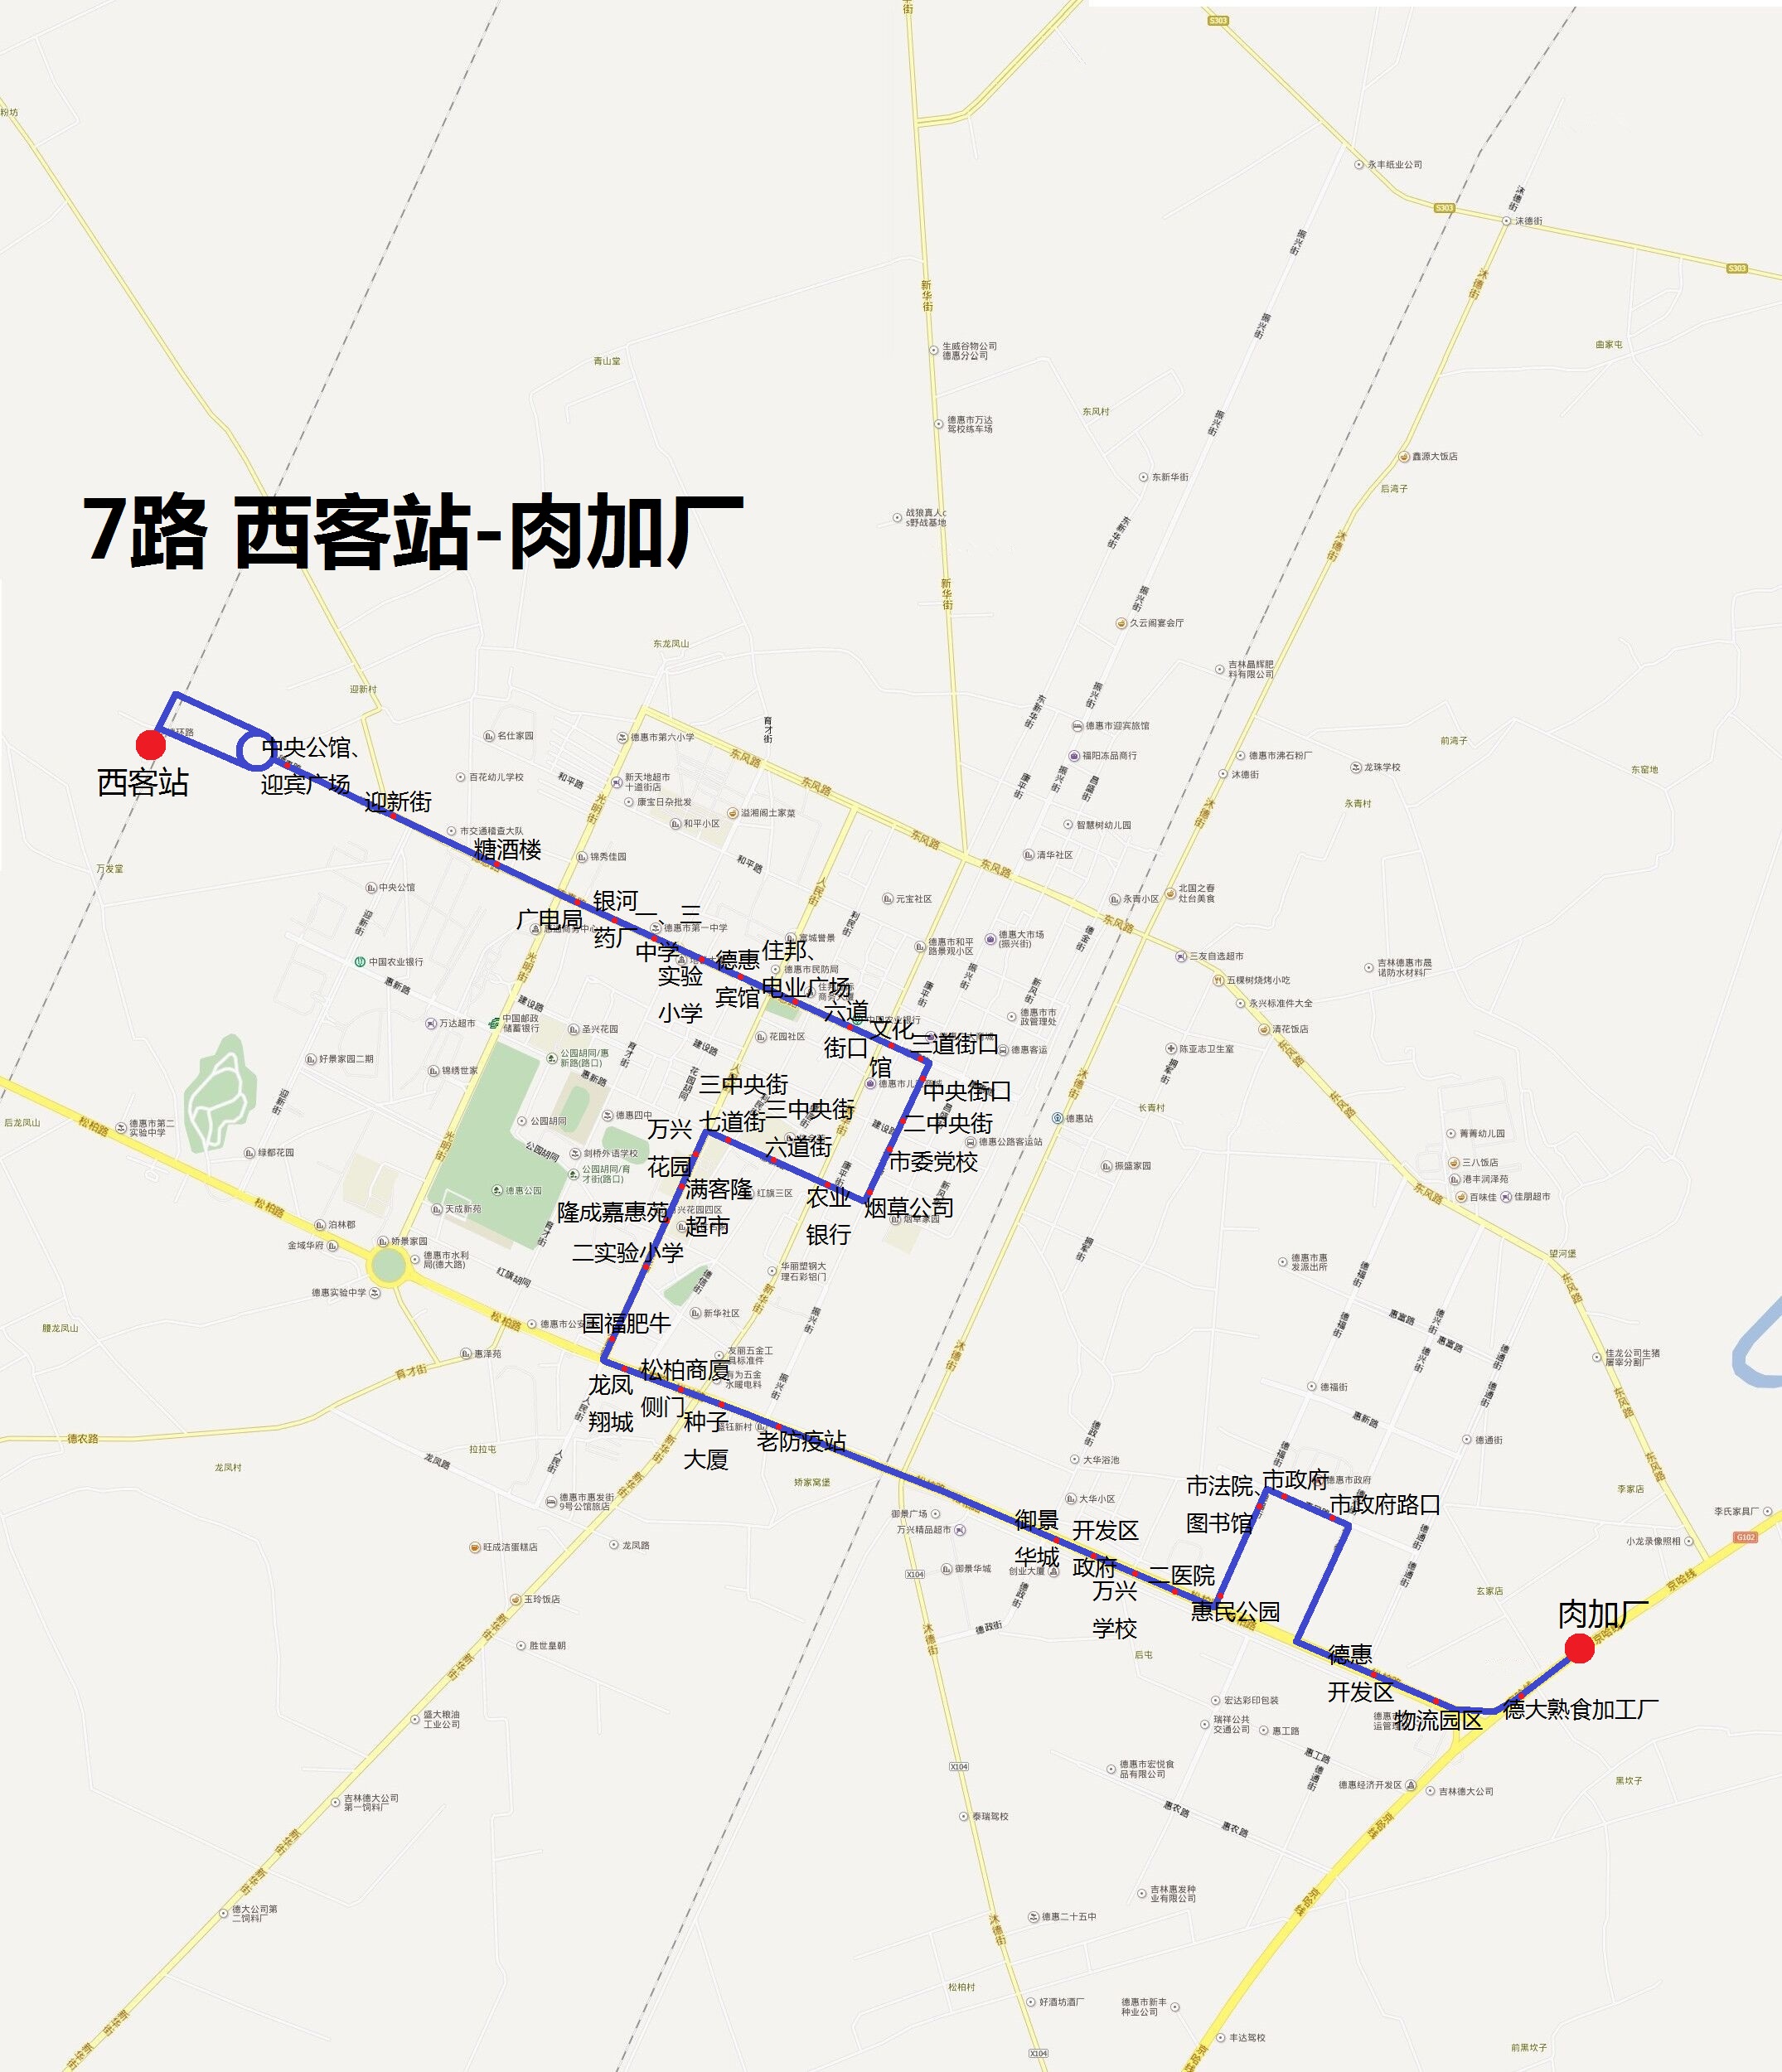 7路公交線路圖